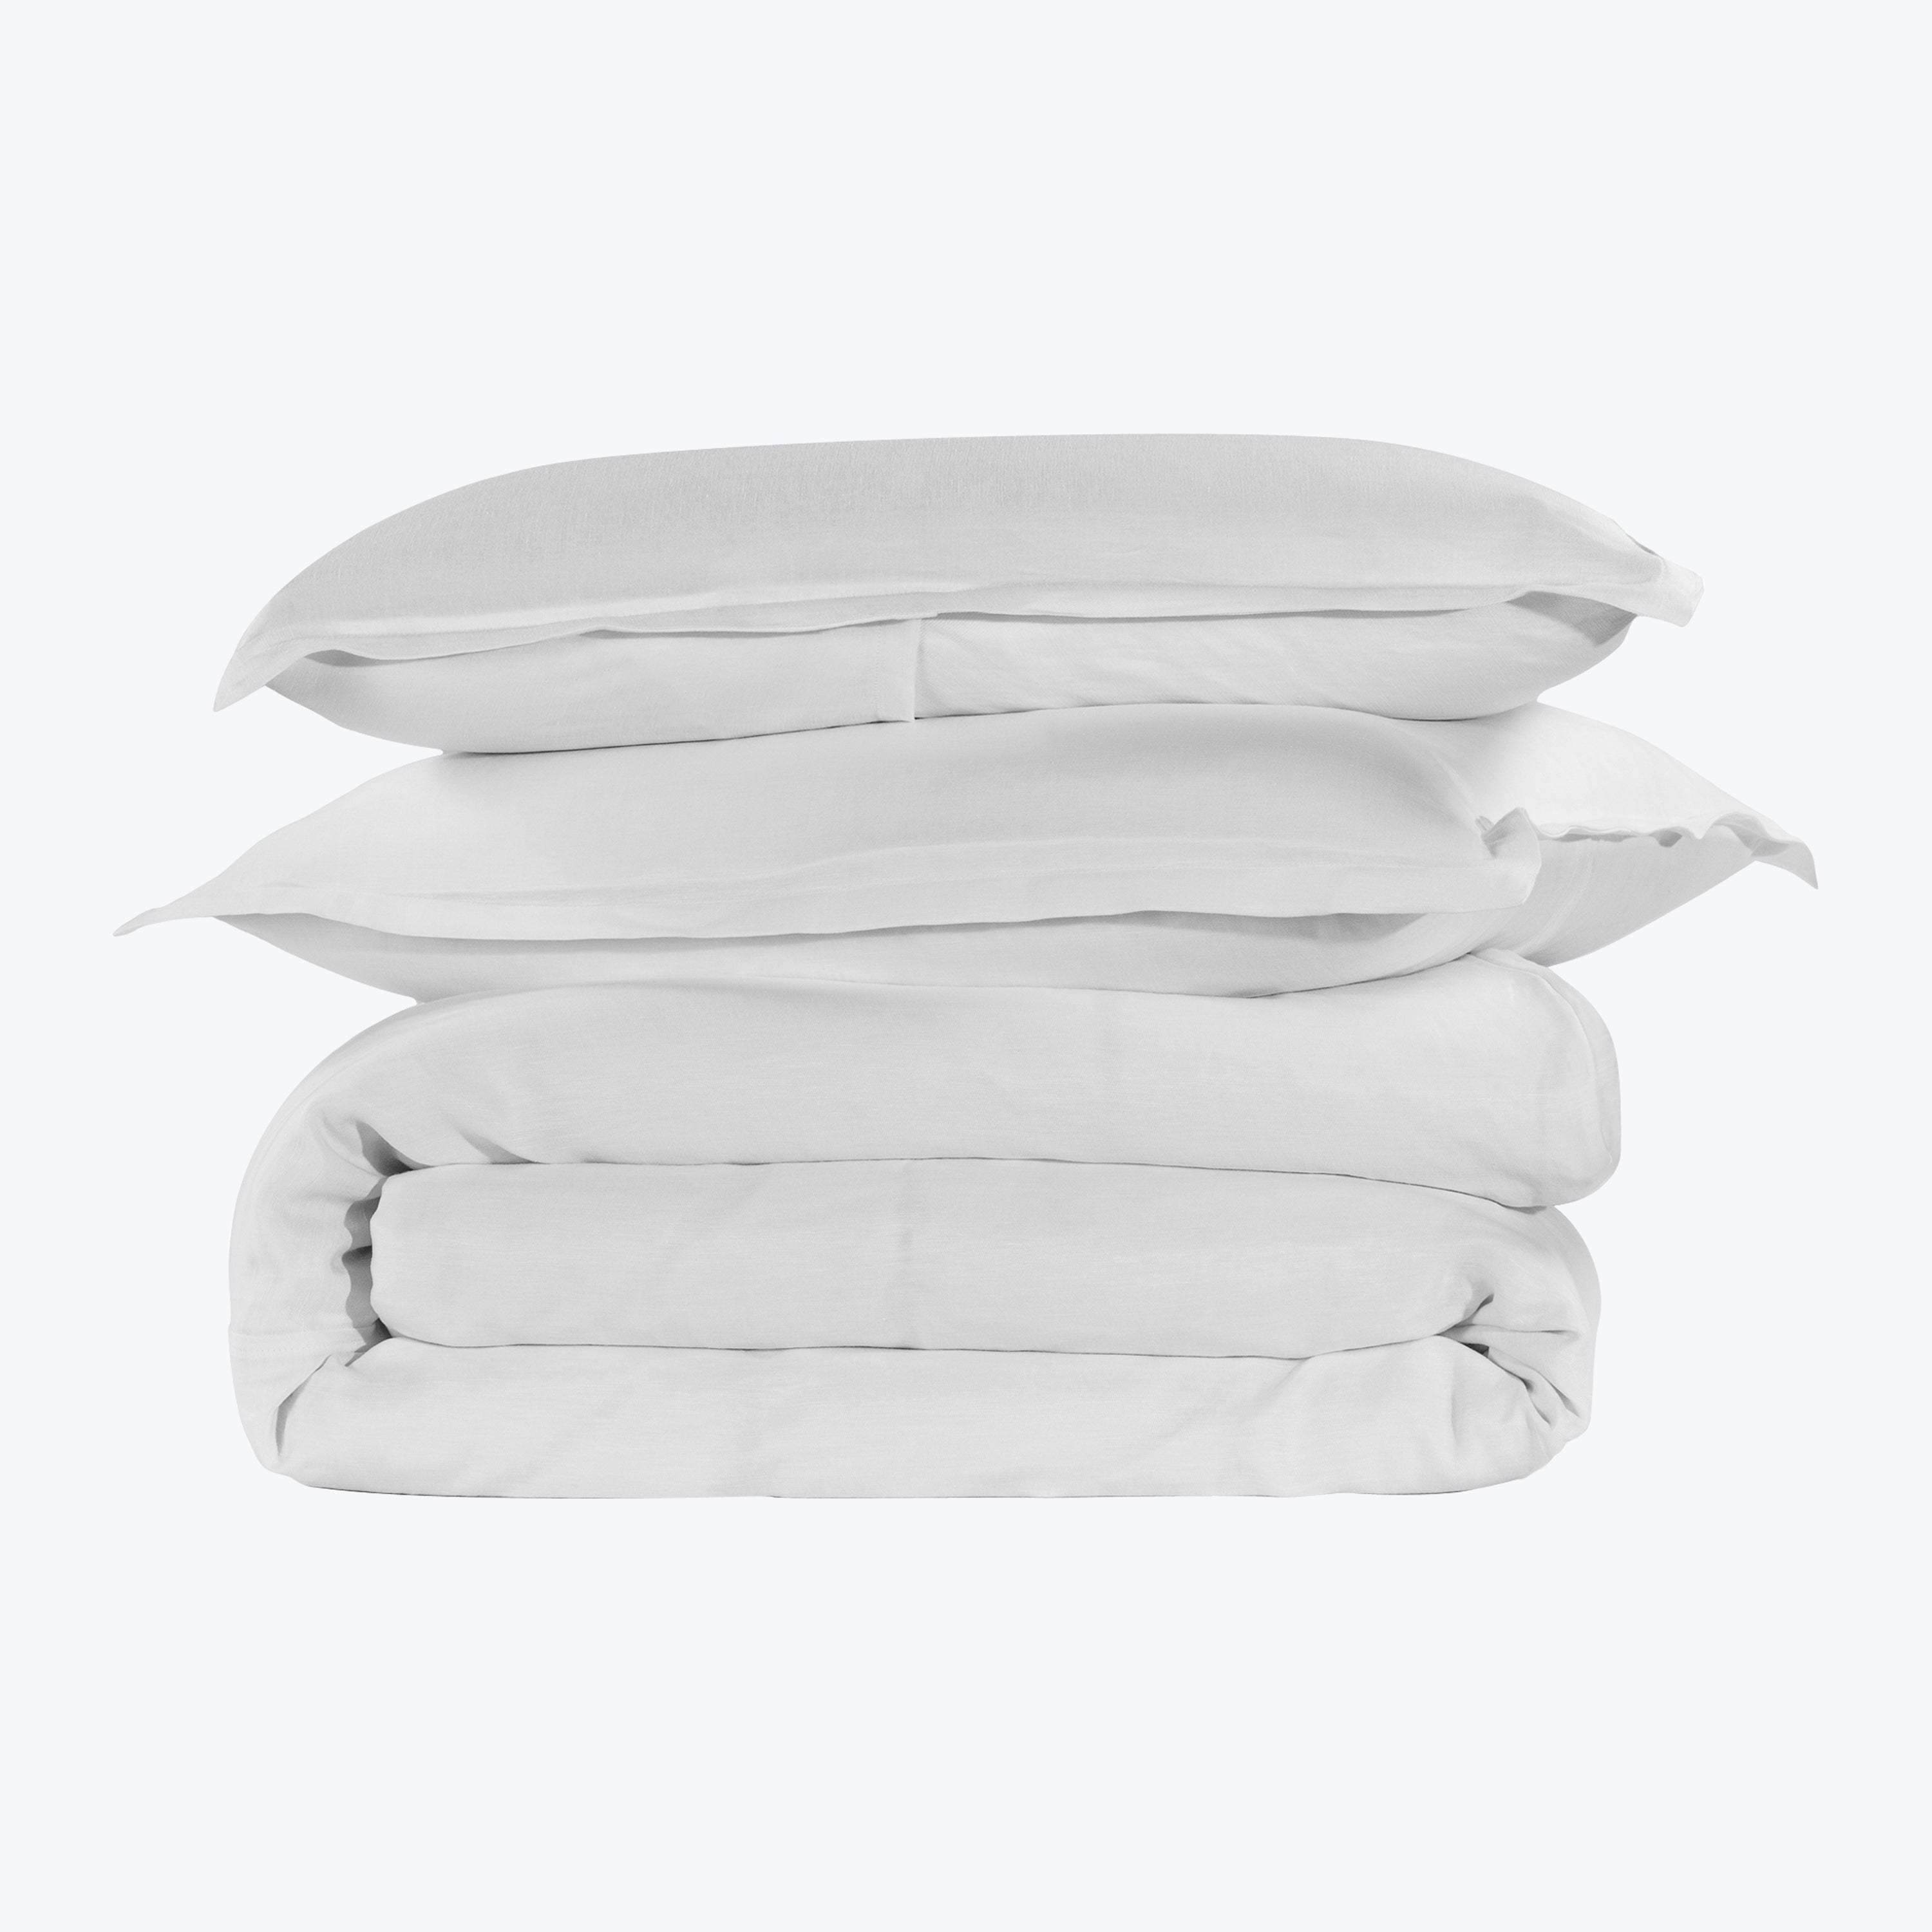 Cupro Linen Bedding Pillow Sham / Standard / White